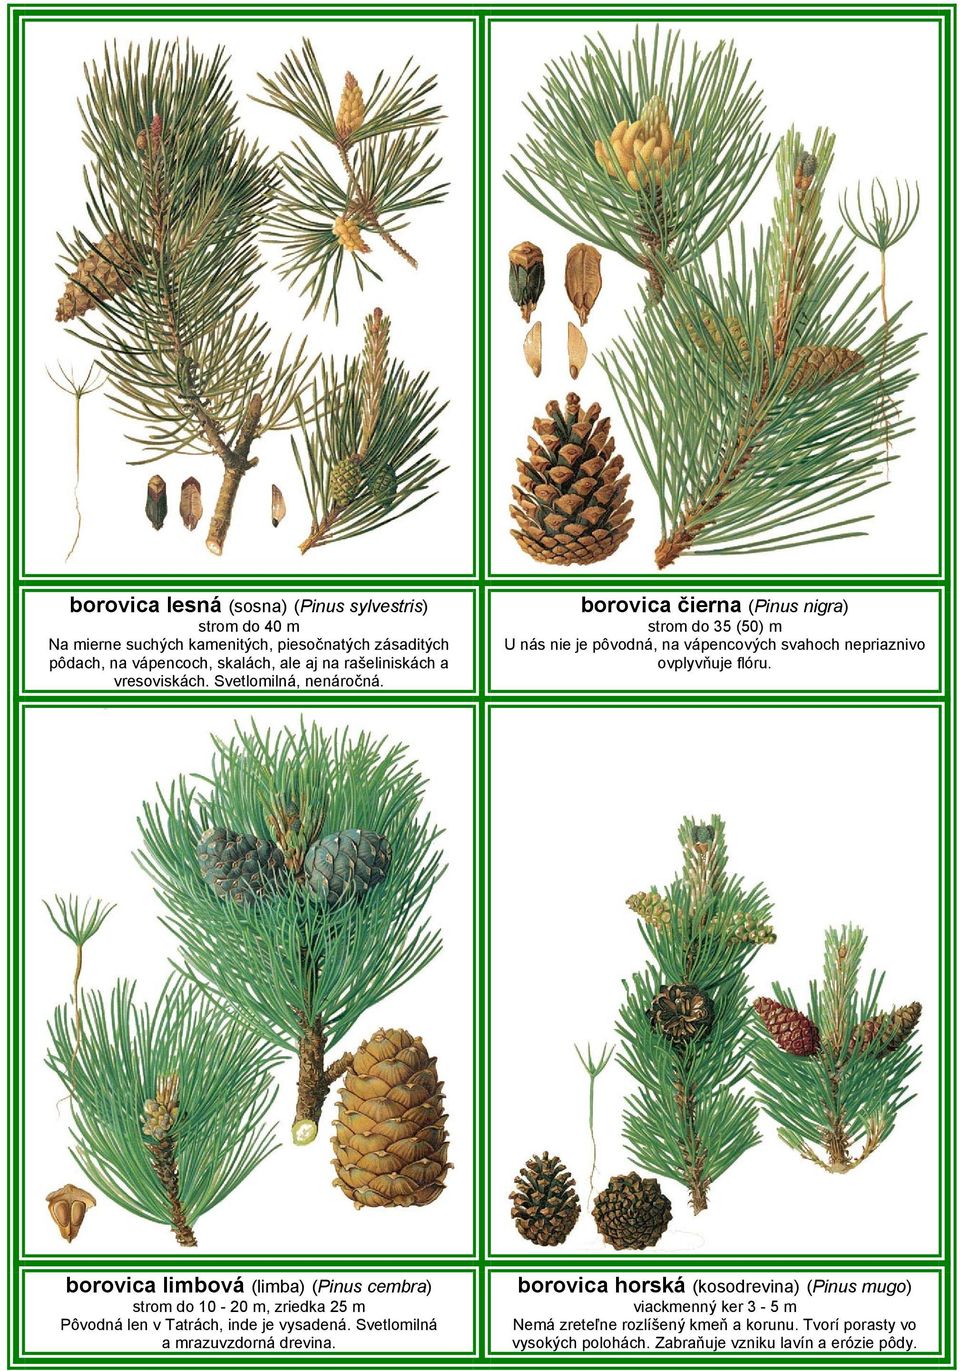 borovica čierna (Pinus nigra) strom do 35 (50) m U nás nie je pôvodná, na vápencových svahoch nepriaznivo ovplyvňuje flóru.